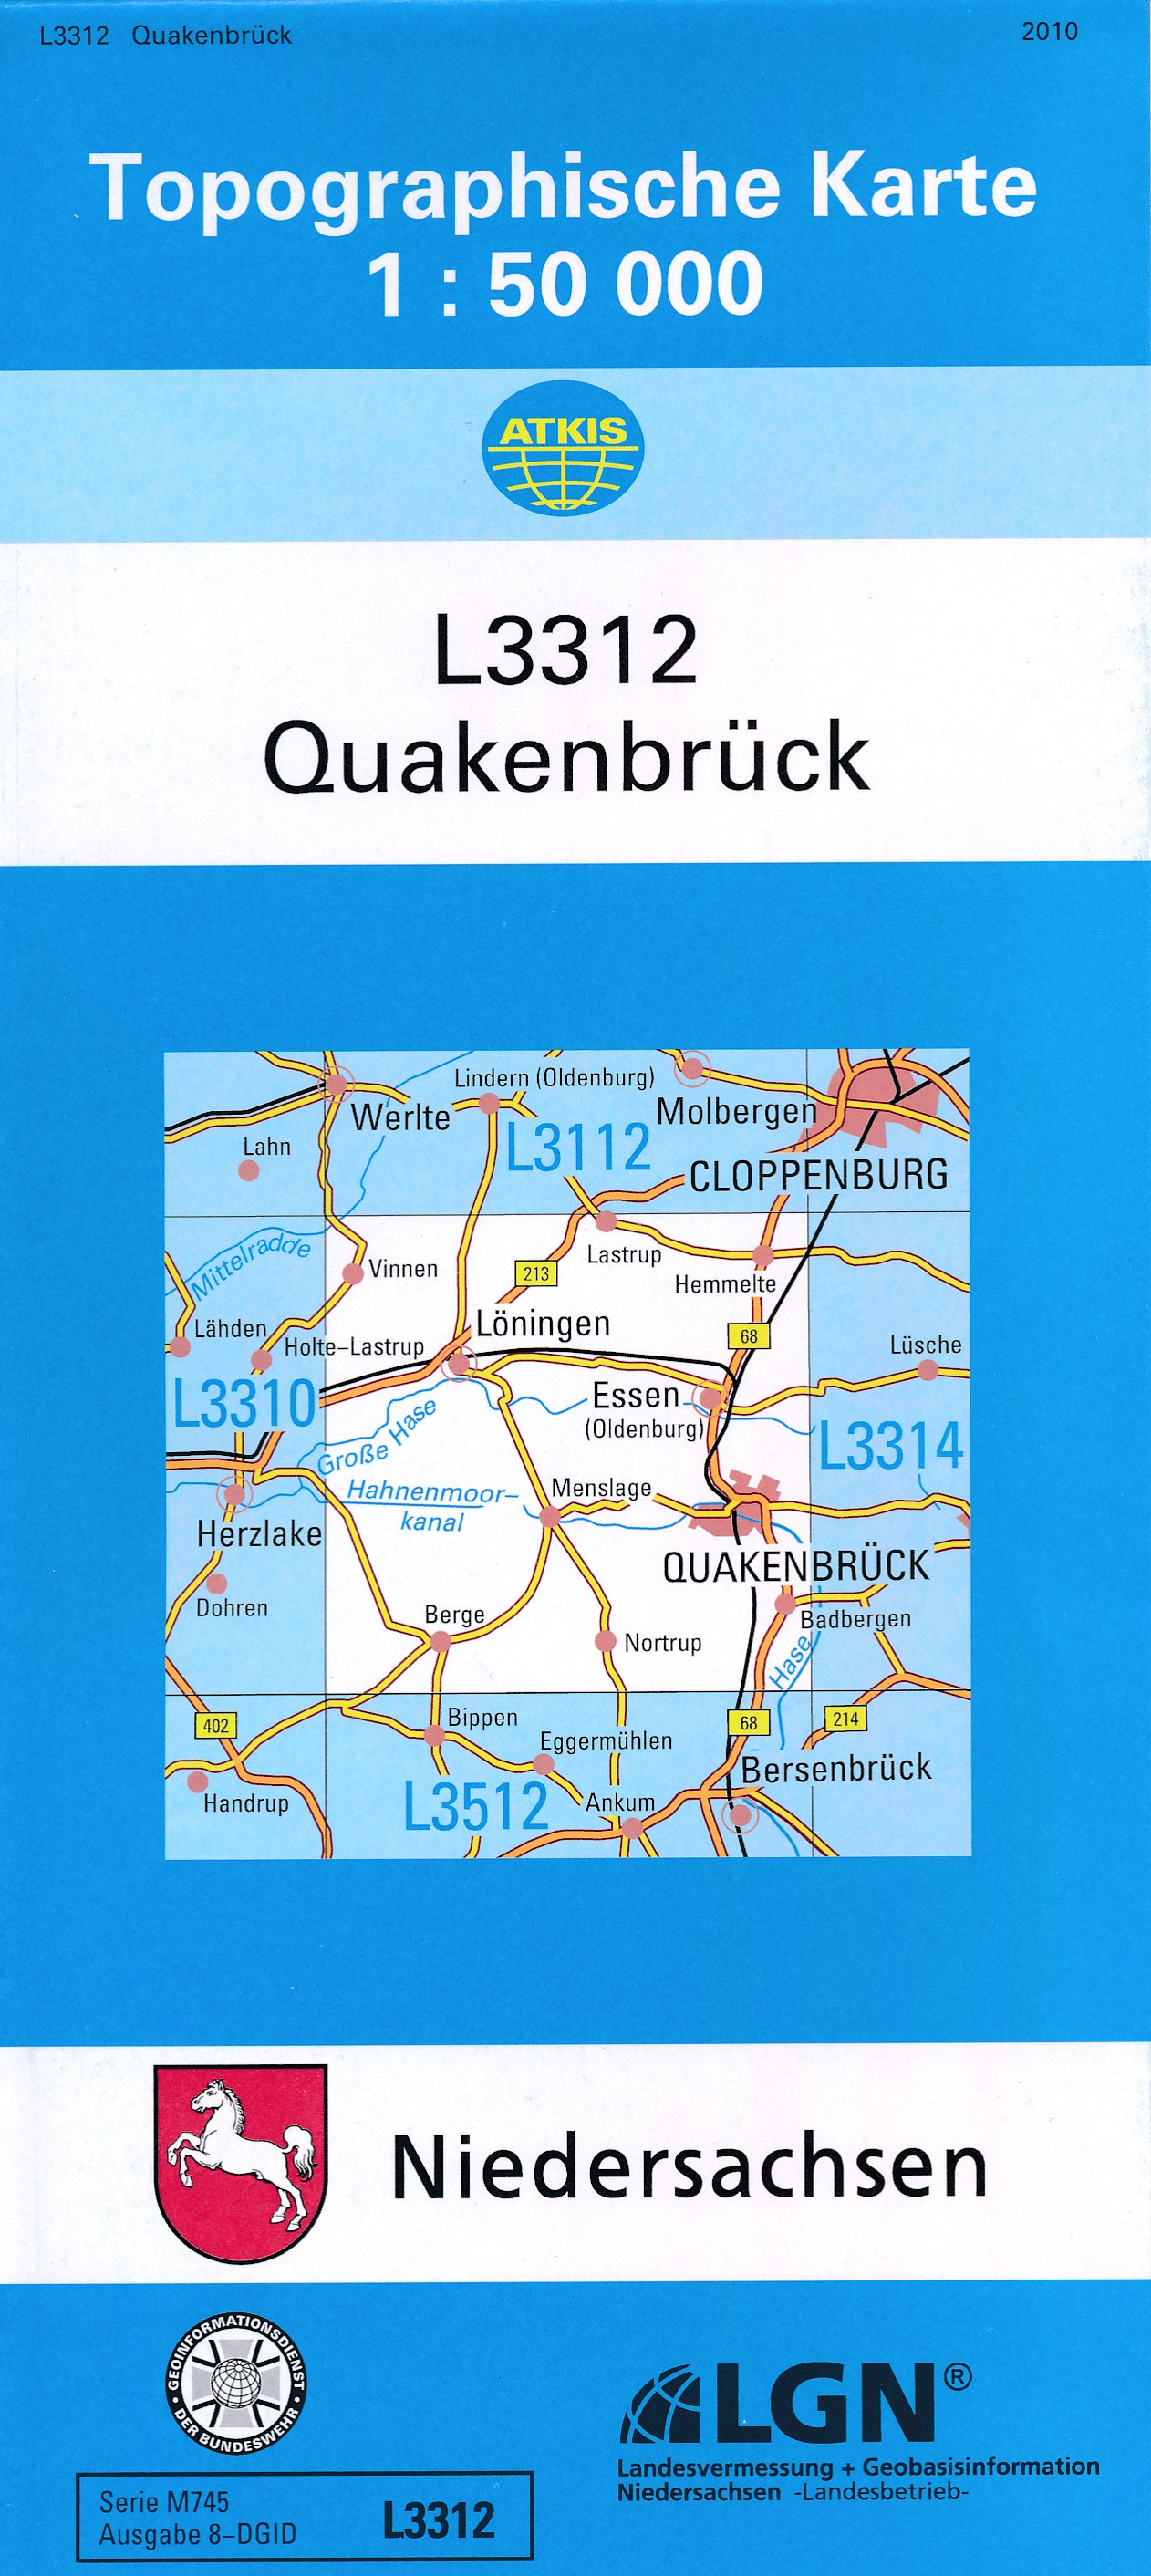 Topografische kaart L3312 Quakenbrück | LGN de zwerver